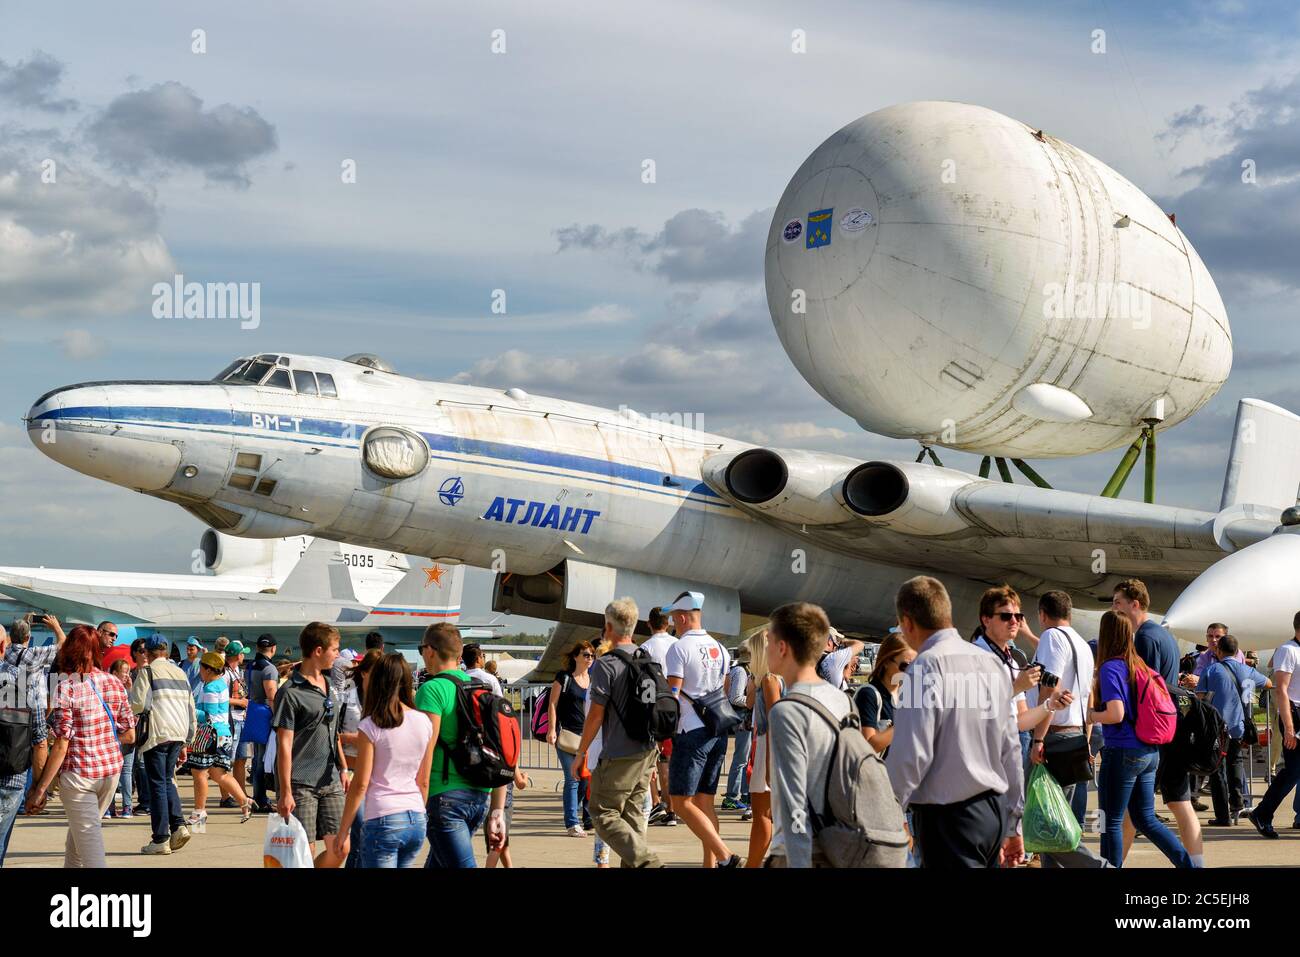 REGIONE DI MOSCA - 28 AGOSTO 2015: L'aereo strategico sovietico Myasishchev VM-T Atlant al Salone Internazionale dell'Aviazione e dello spazio (MAKS) in Foto Stock